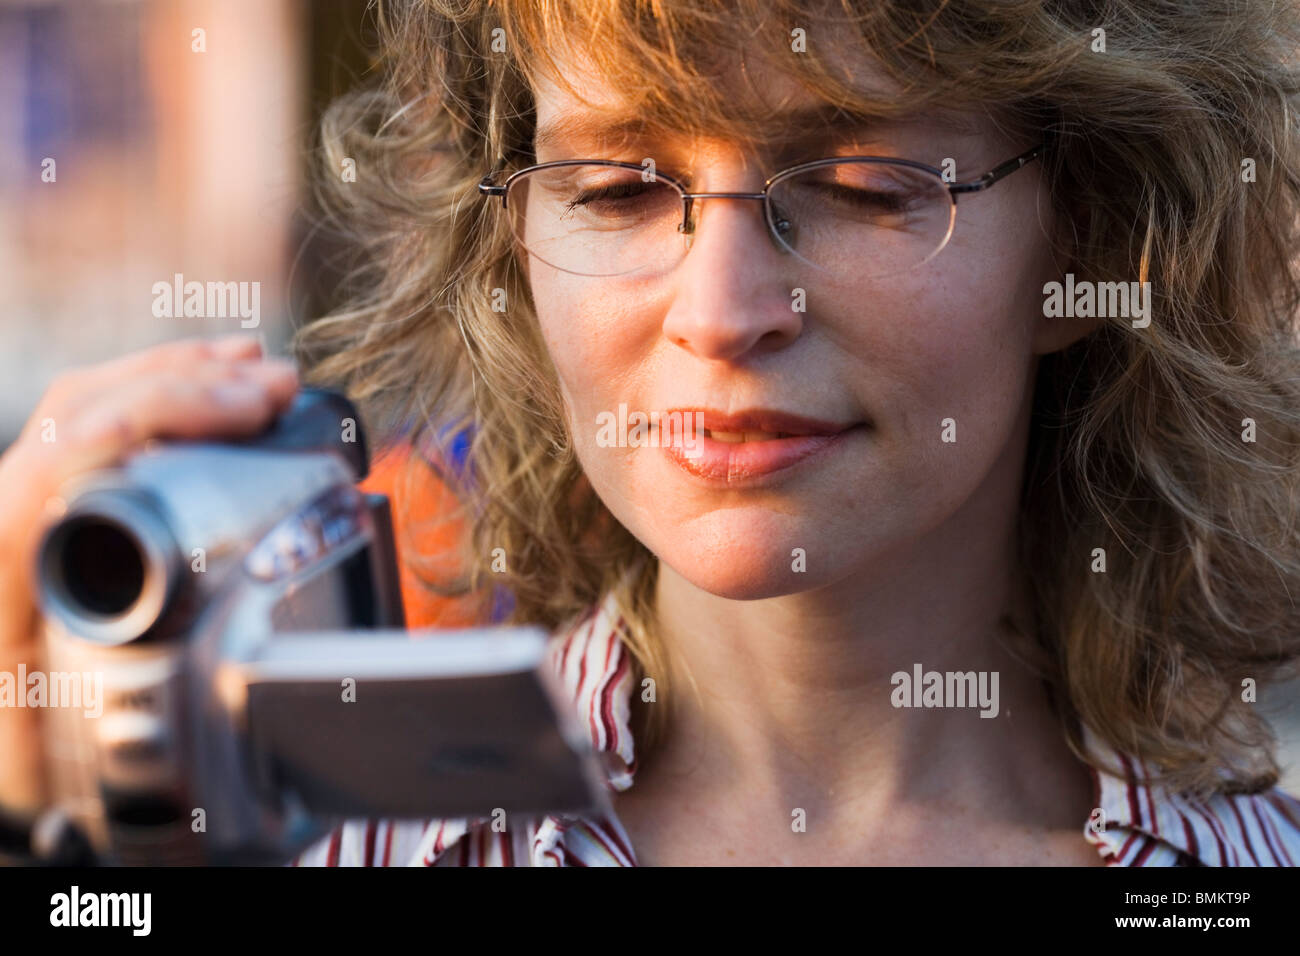 Ein lächelndes Mädchen Aufnahme, digitale Filmkamera in der hand, Rom, Italien Stockfoto